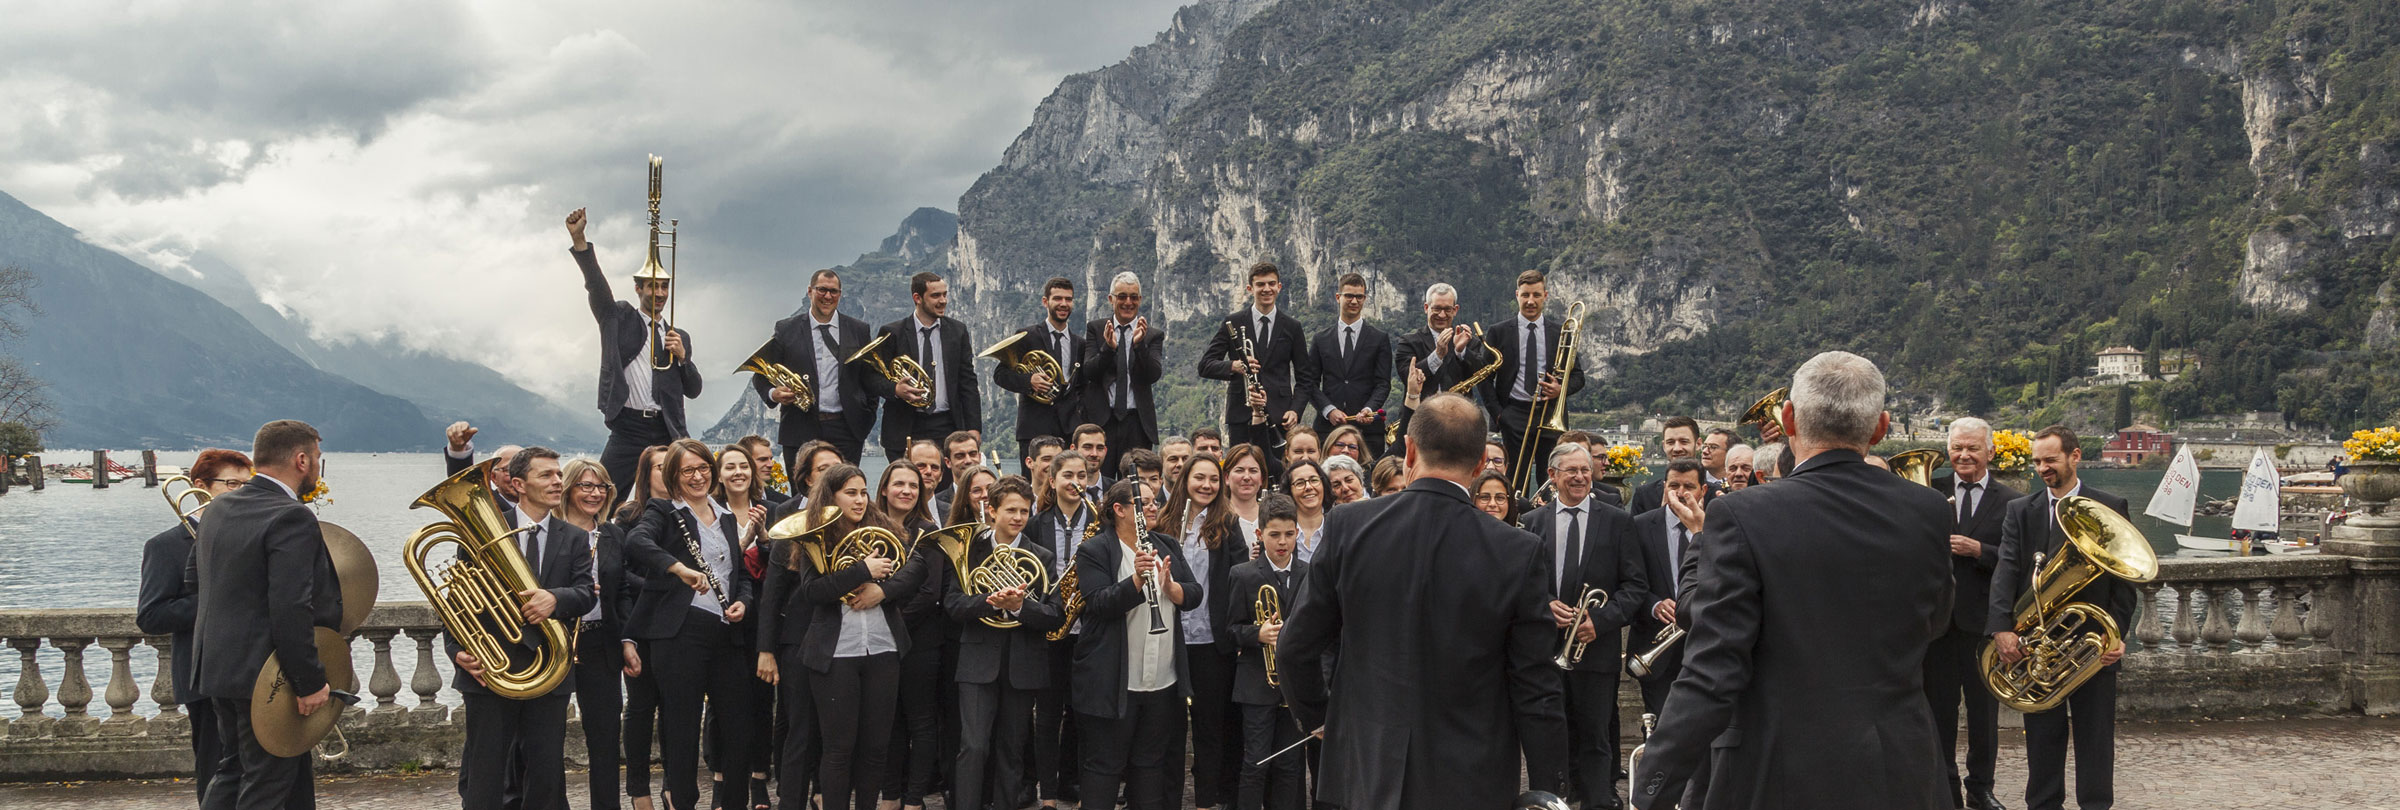 Flicorno d'Oro, Internationaler Blasorchesterwettbewerb im Riva del Garda